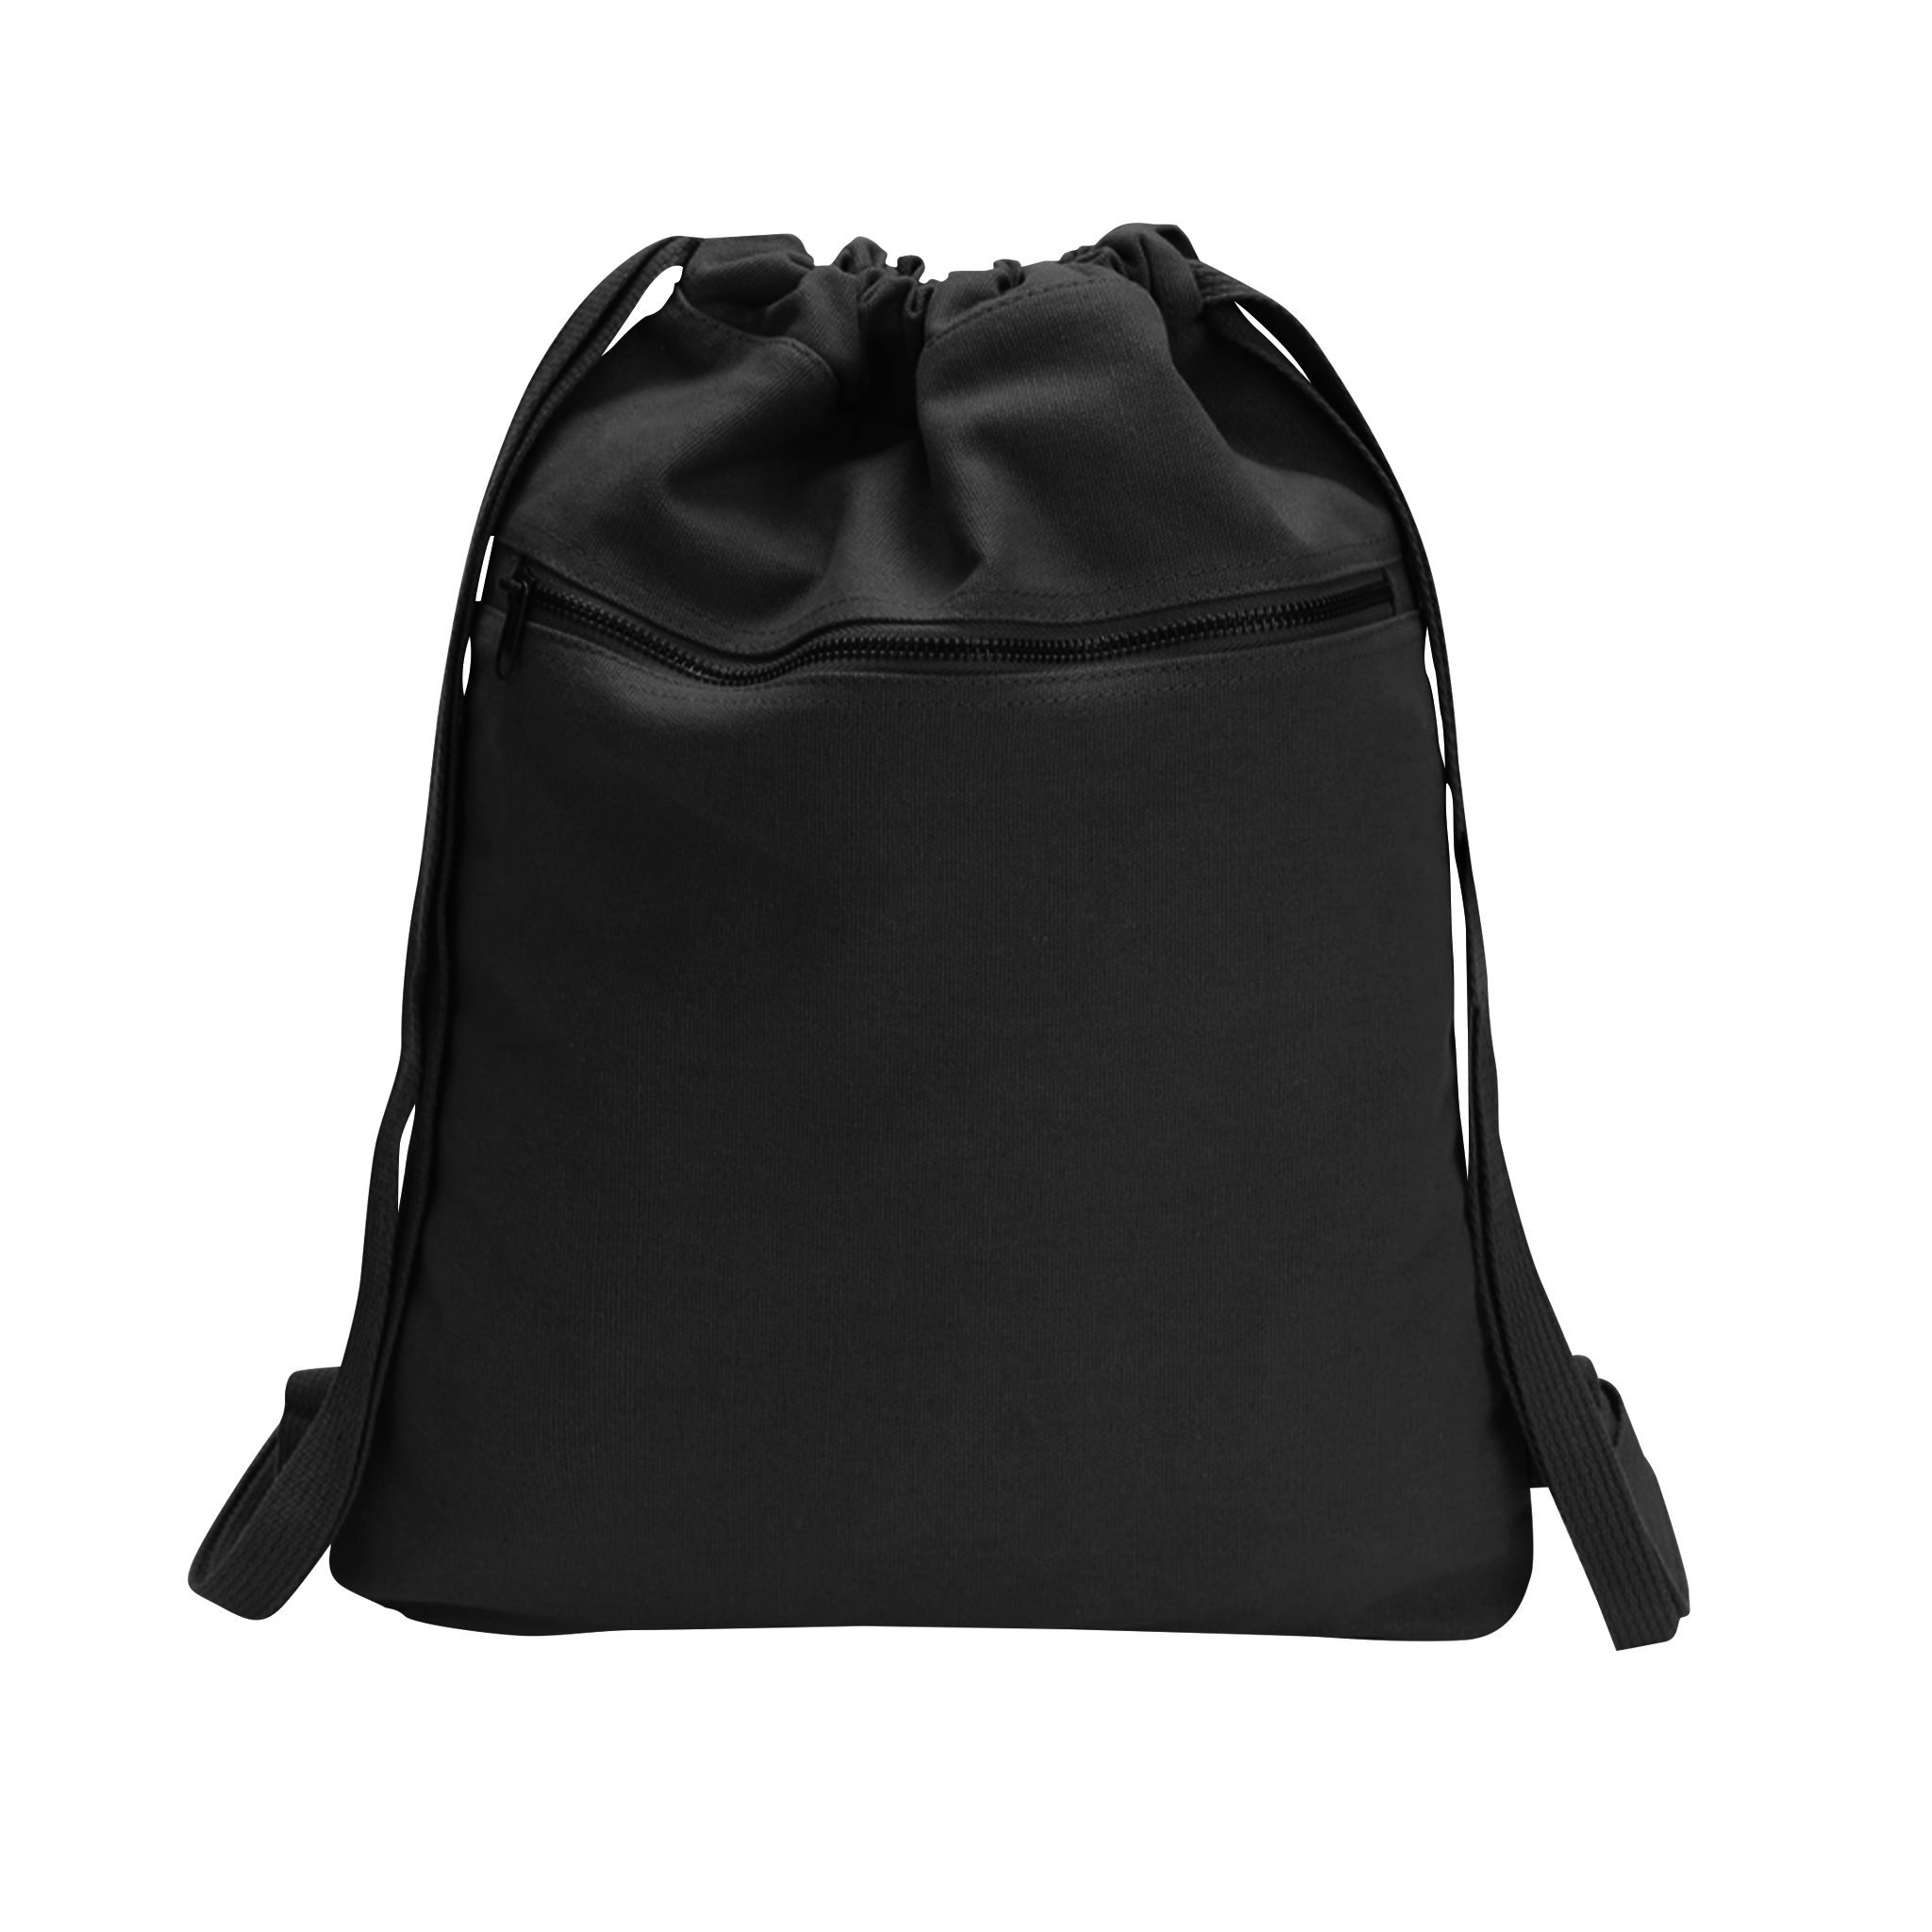 Drawstring Bag with Front Pocket (DB05)